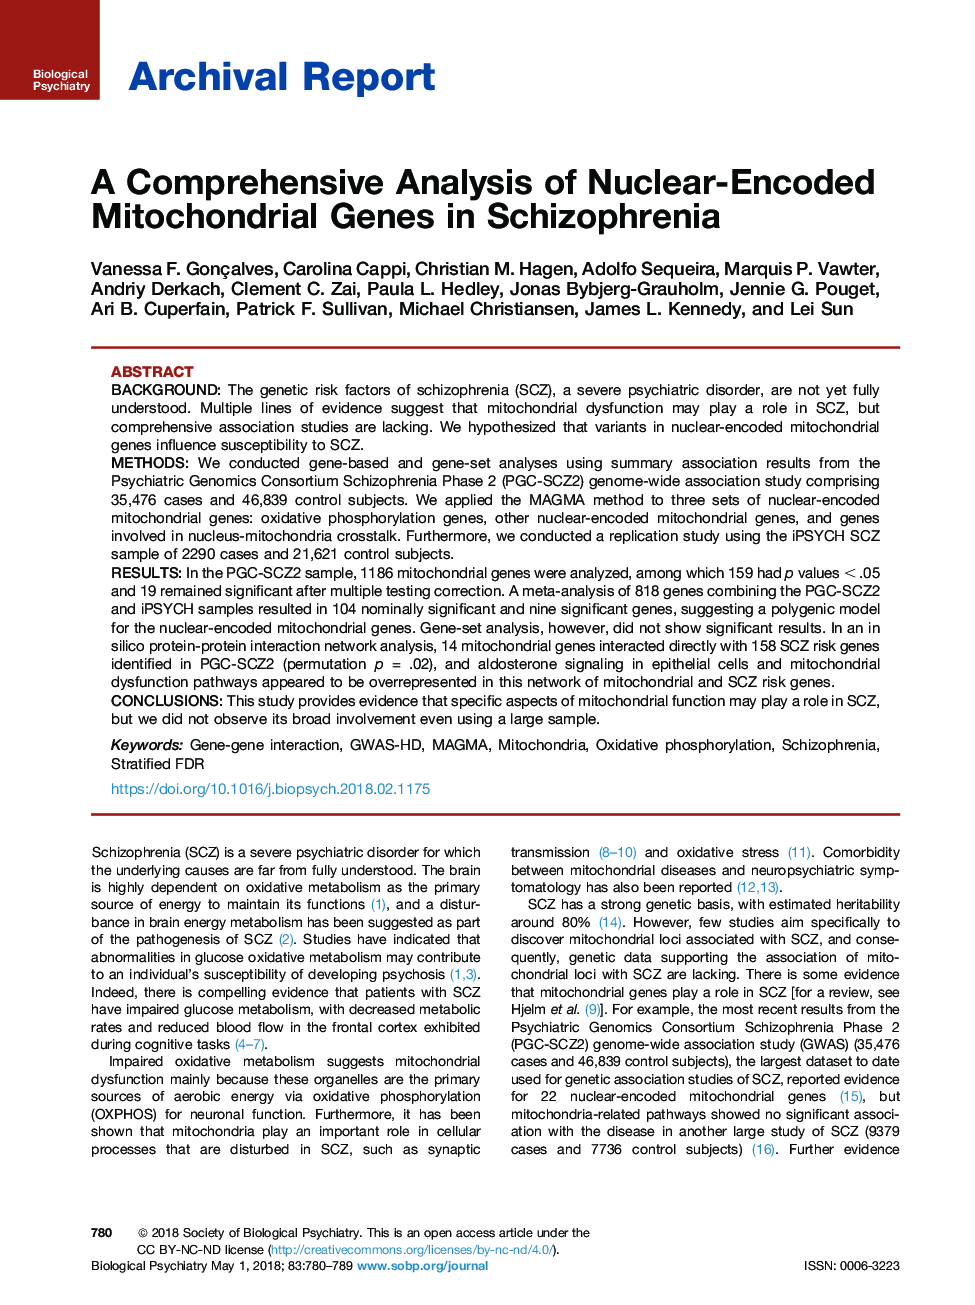 یک تجزیه و تحلیل جامع از ژن های میتوکندریایی رمزگذاری شده در اسکیزوفرنیا 